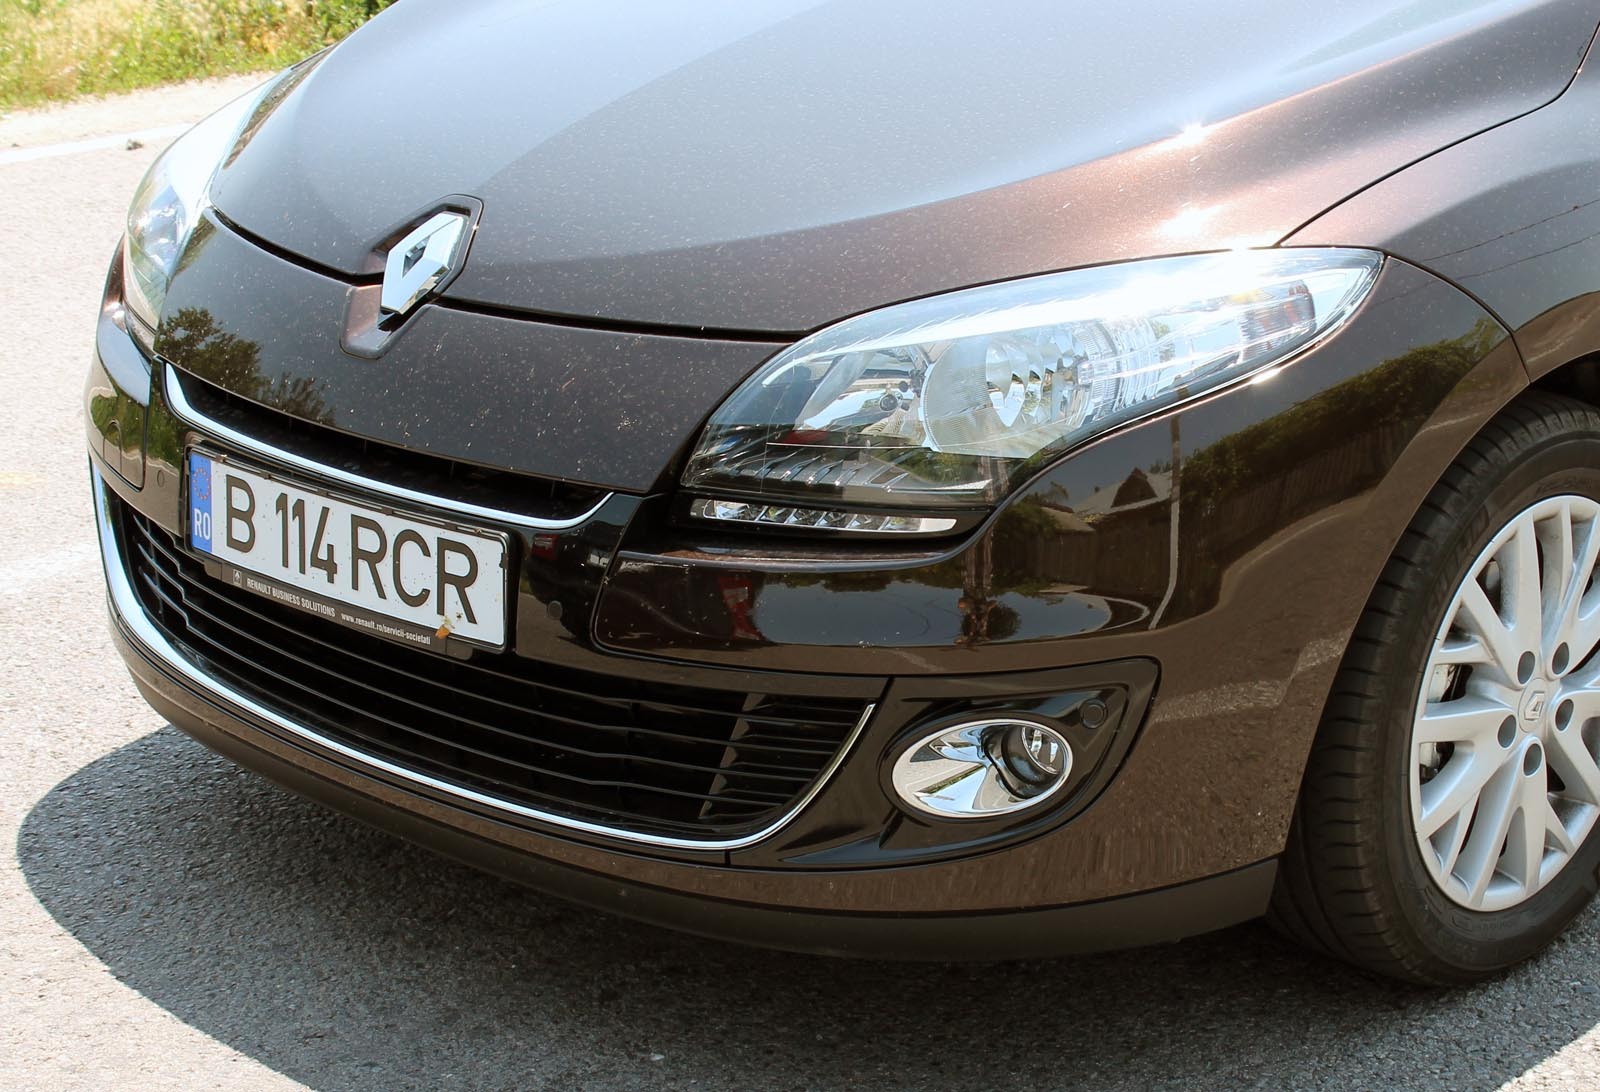 Principalele modificari pentru Renault Megane Collection 2012 - farurile cu lumini de pozitie LED si spoilerul redesenat